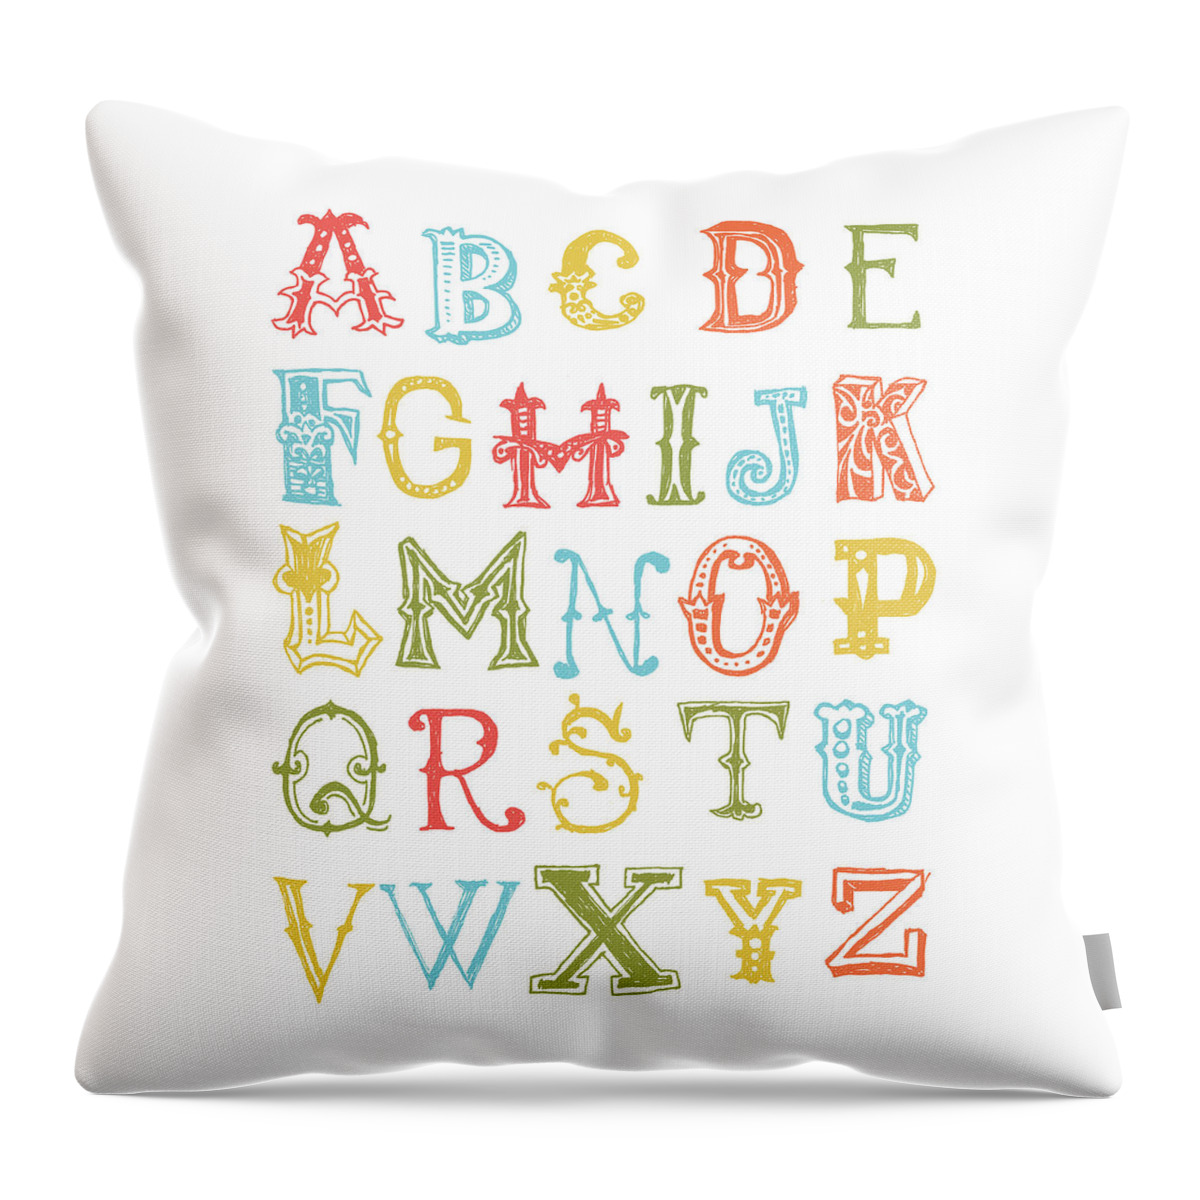 Inspirational Throw Pillow featuring the digital art Alphabet Poster by Jaime Friedman